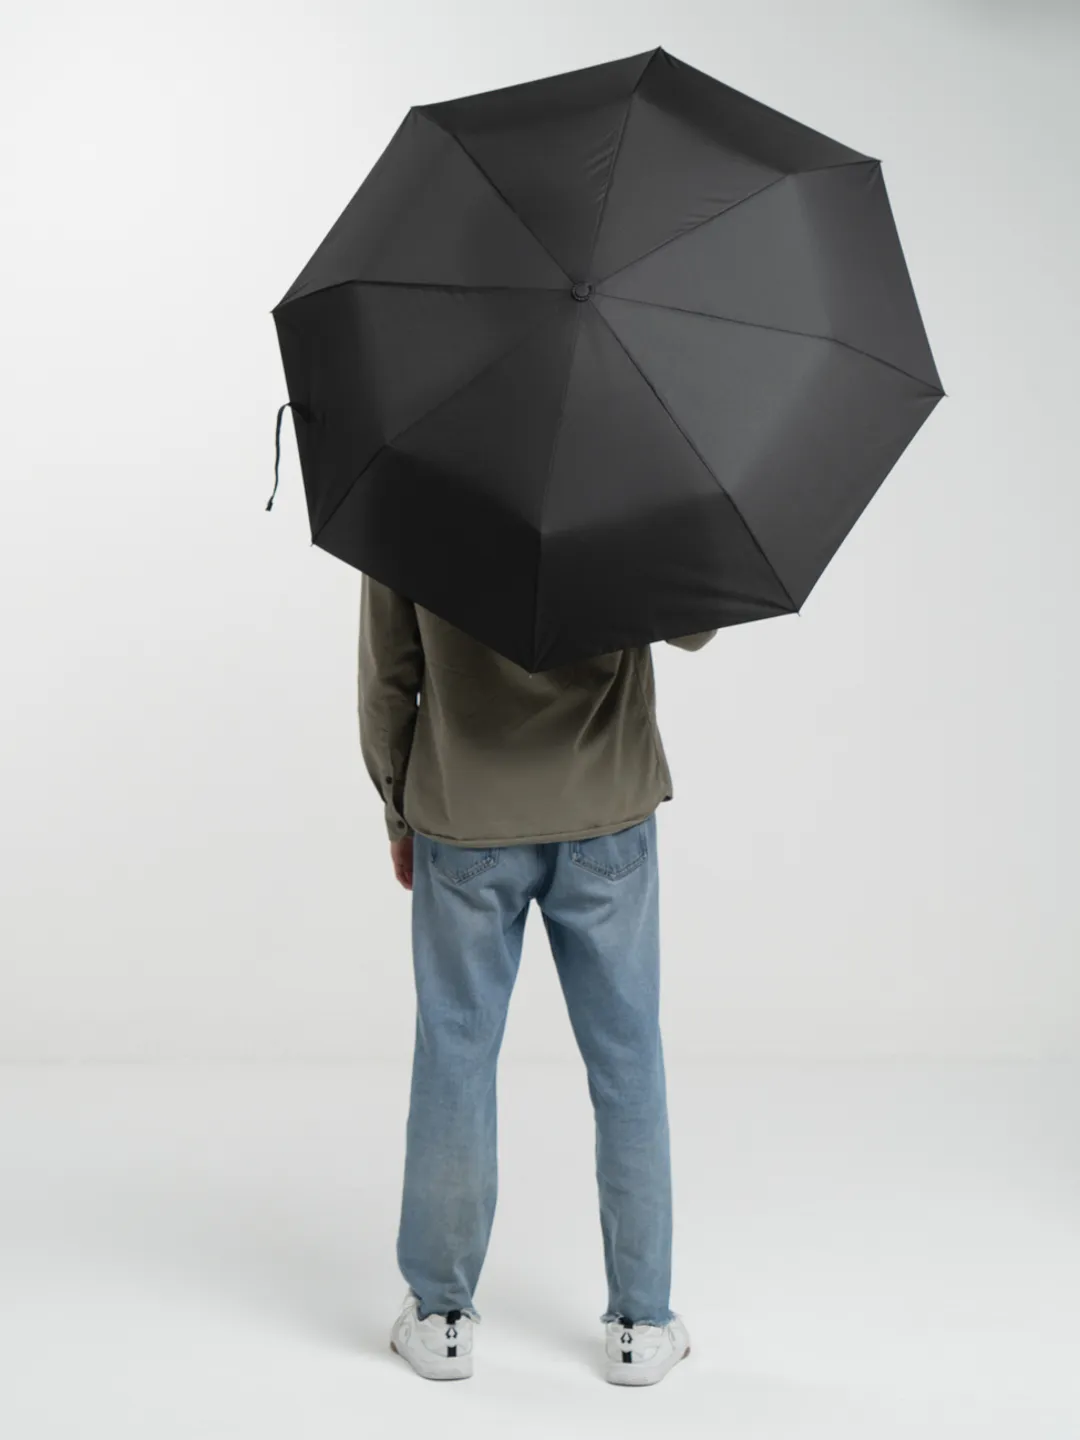 Особенности устройства зонта